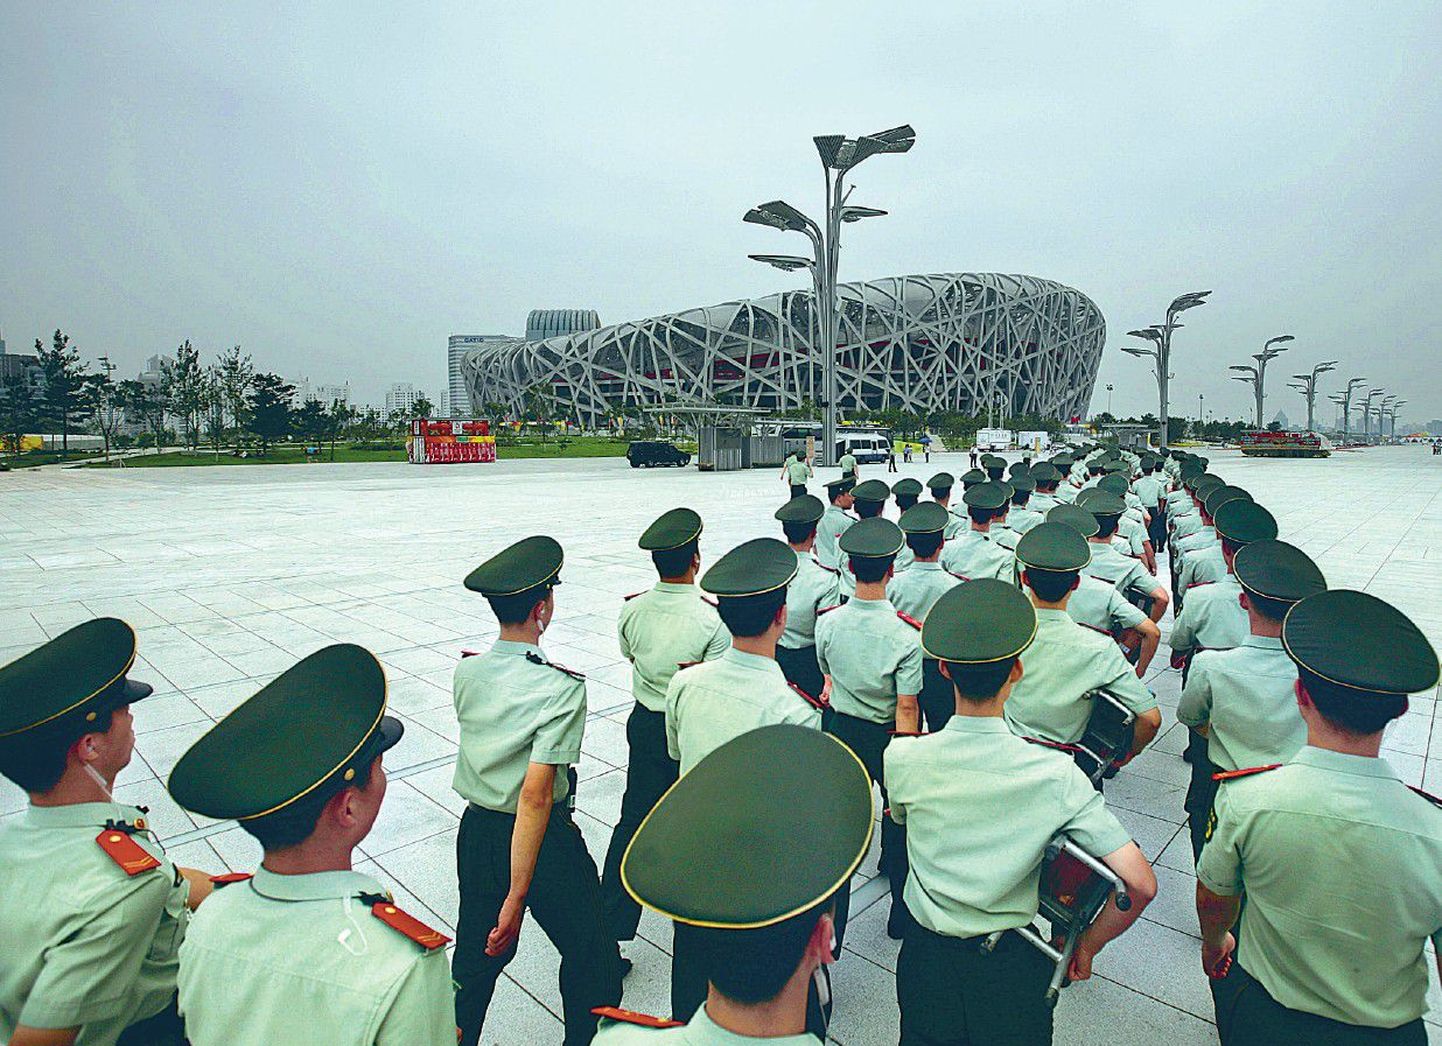 Hiina politseinikud marsivad 5,7 miljardit dollarit maksma läinud olümpiastaadioni ehk Linnupesa ees.